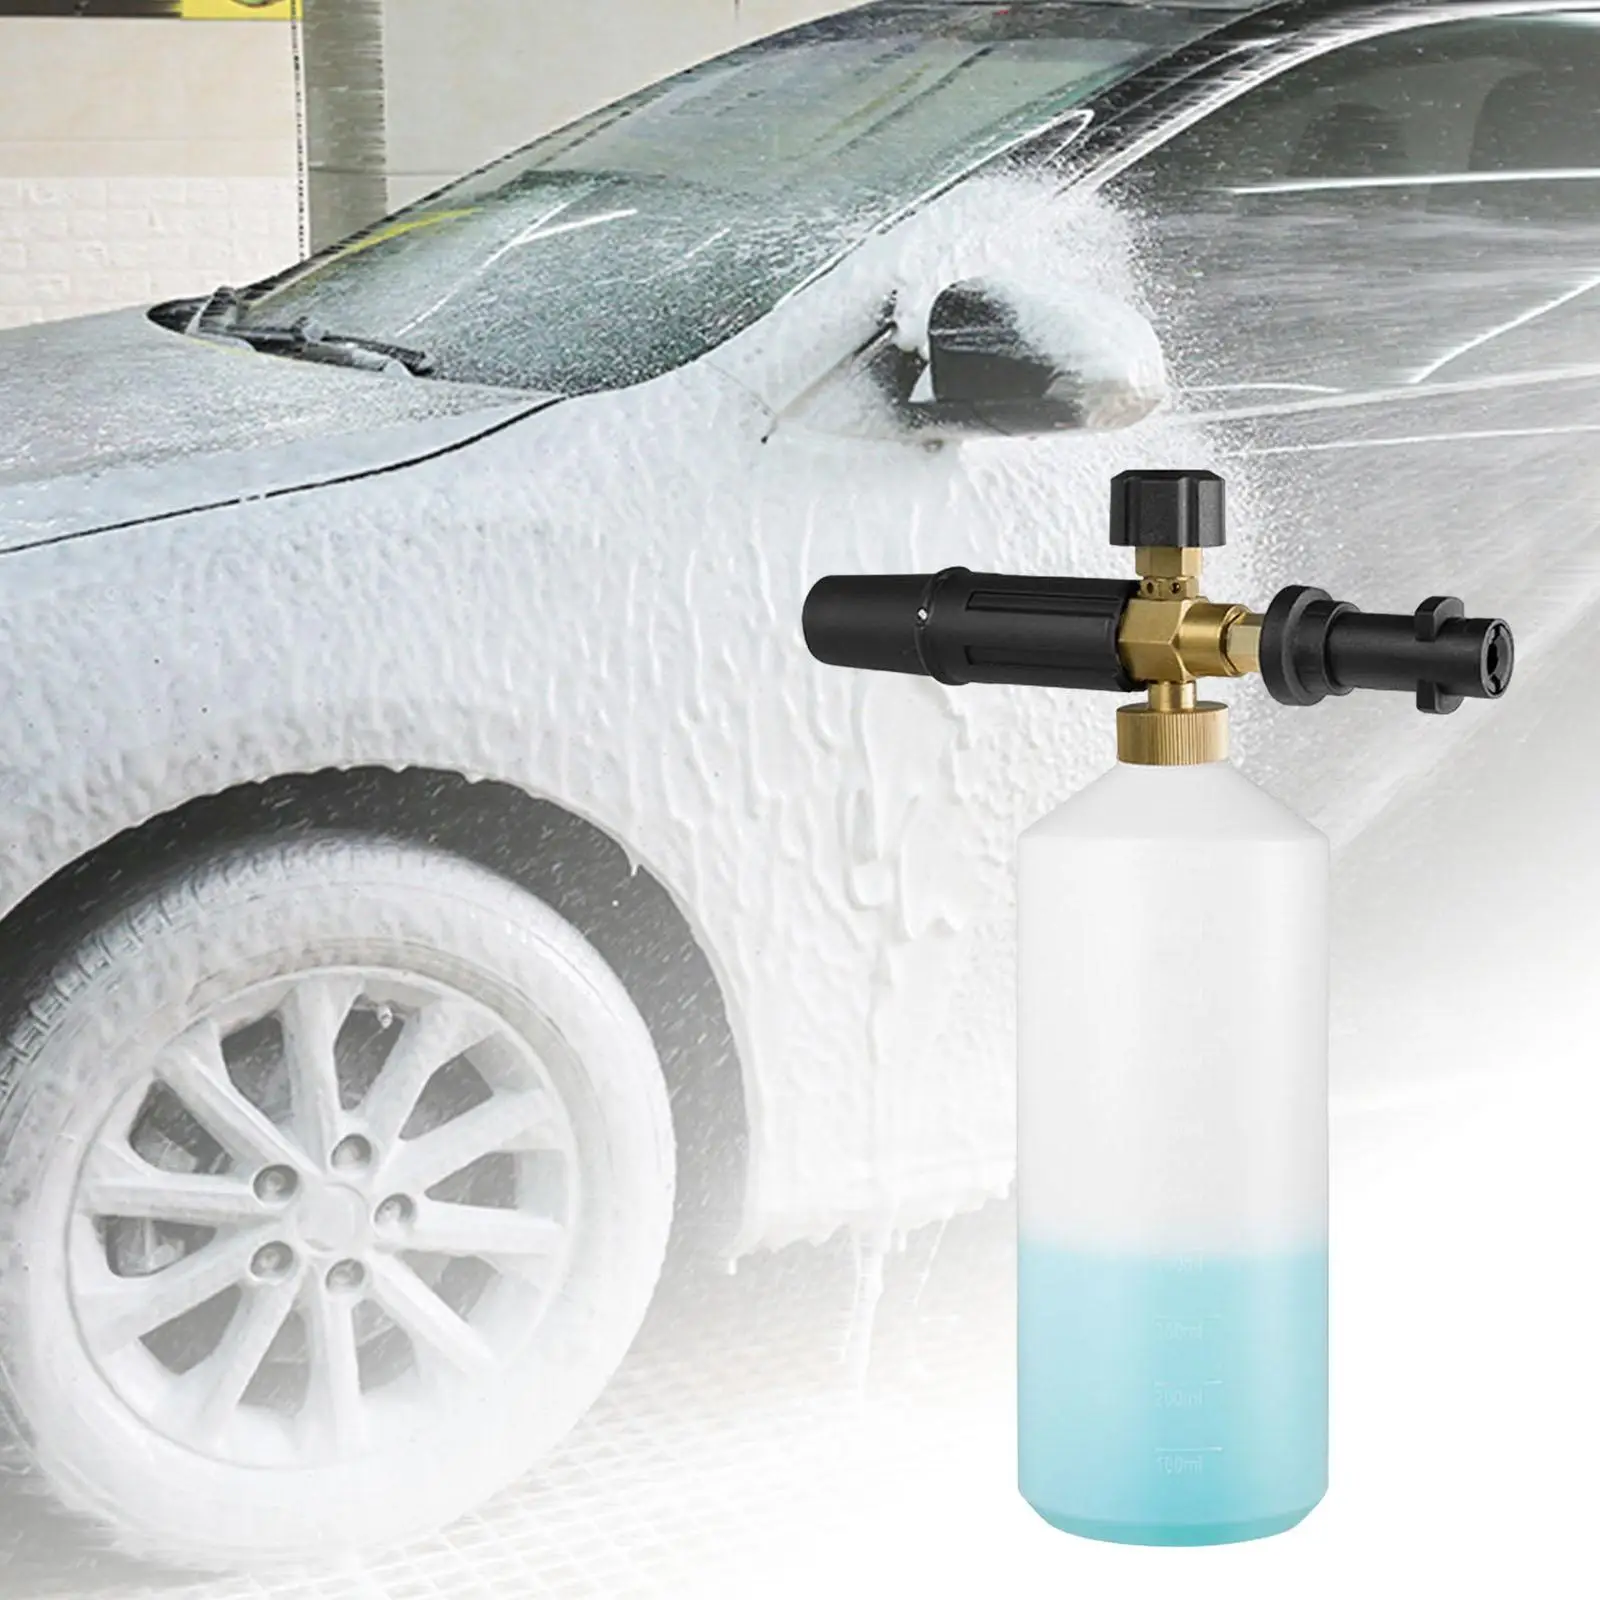 Adjustable Foam Sprayer 1000ml Car Washing Car Washer Foam Pot Foam for S K2 K3 K4 K5 K6 K7 Series